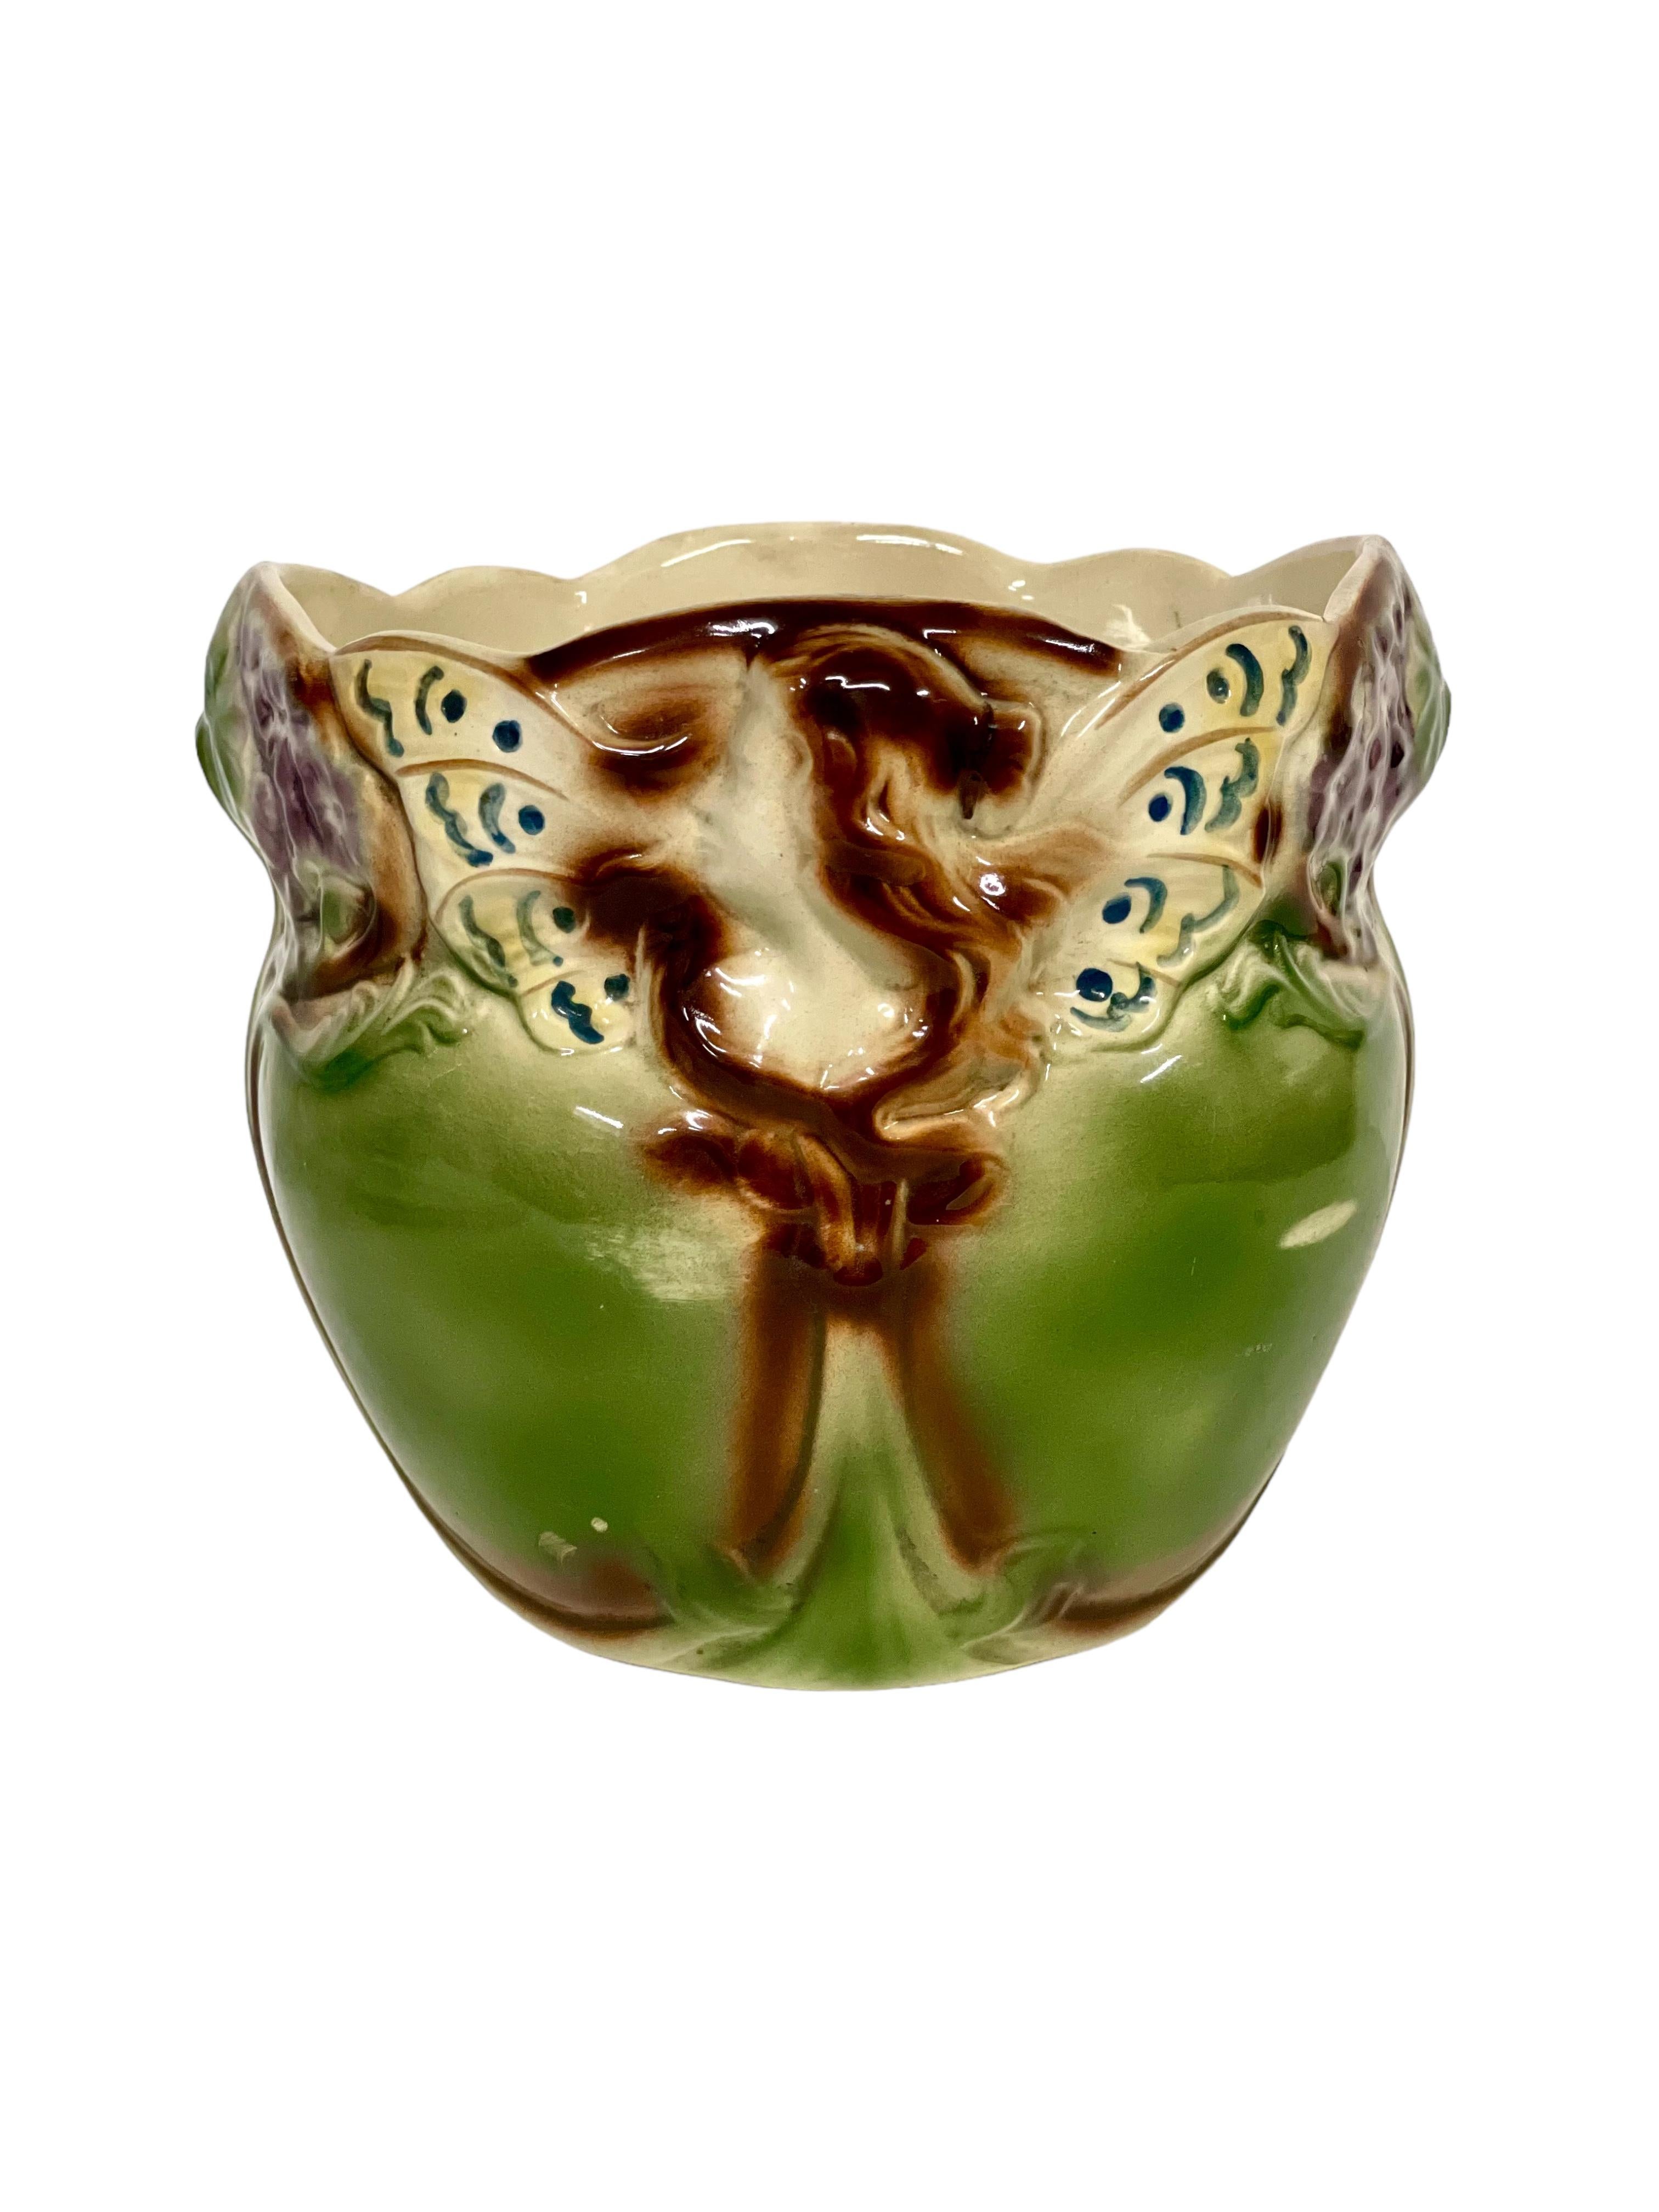 Joli cache-pot en majolique du XIXe siècle, décoré dans des tons de vert et de brun et présentant les couleurs vives, les formes fantaisistes et les sculptures en haut-relief typiques de ce style. De conception Art nouveau, ce pot en terre cuite